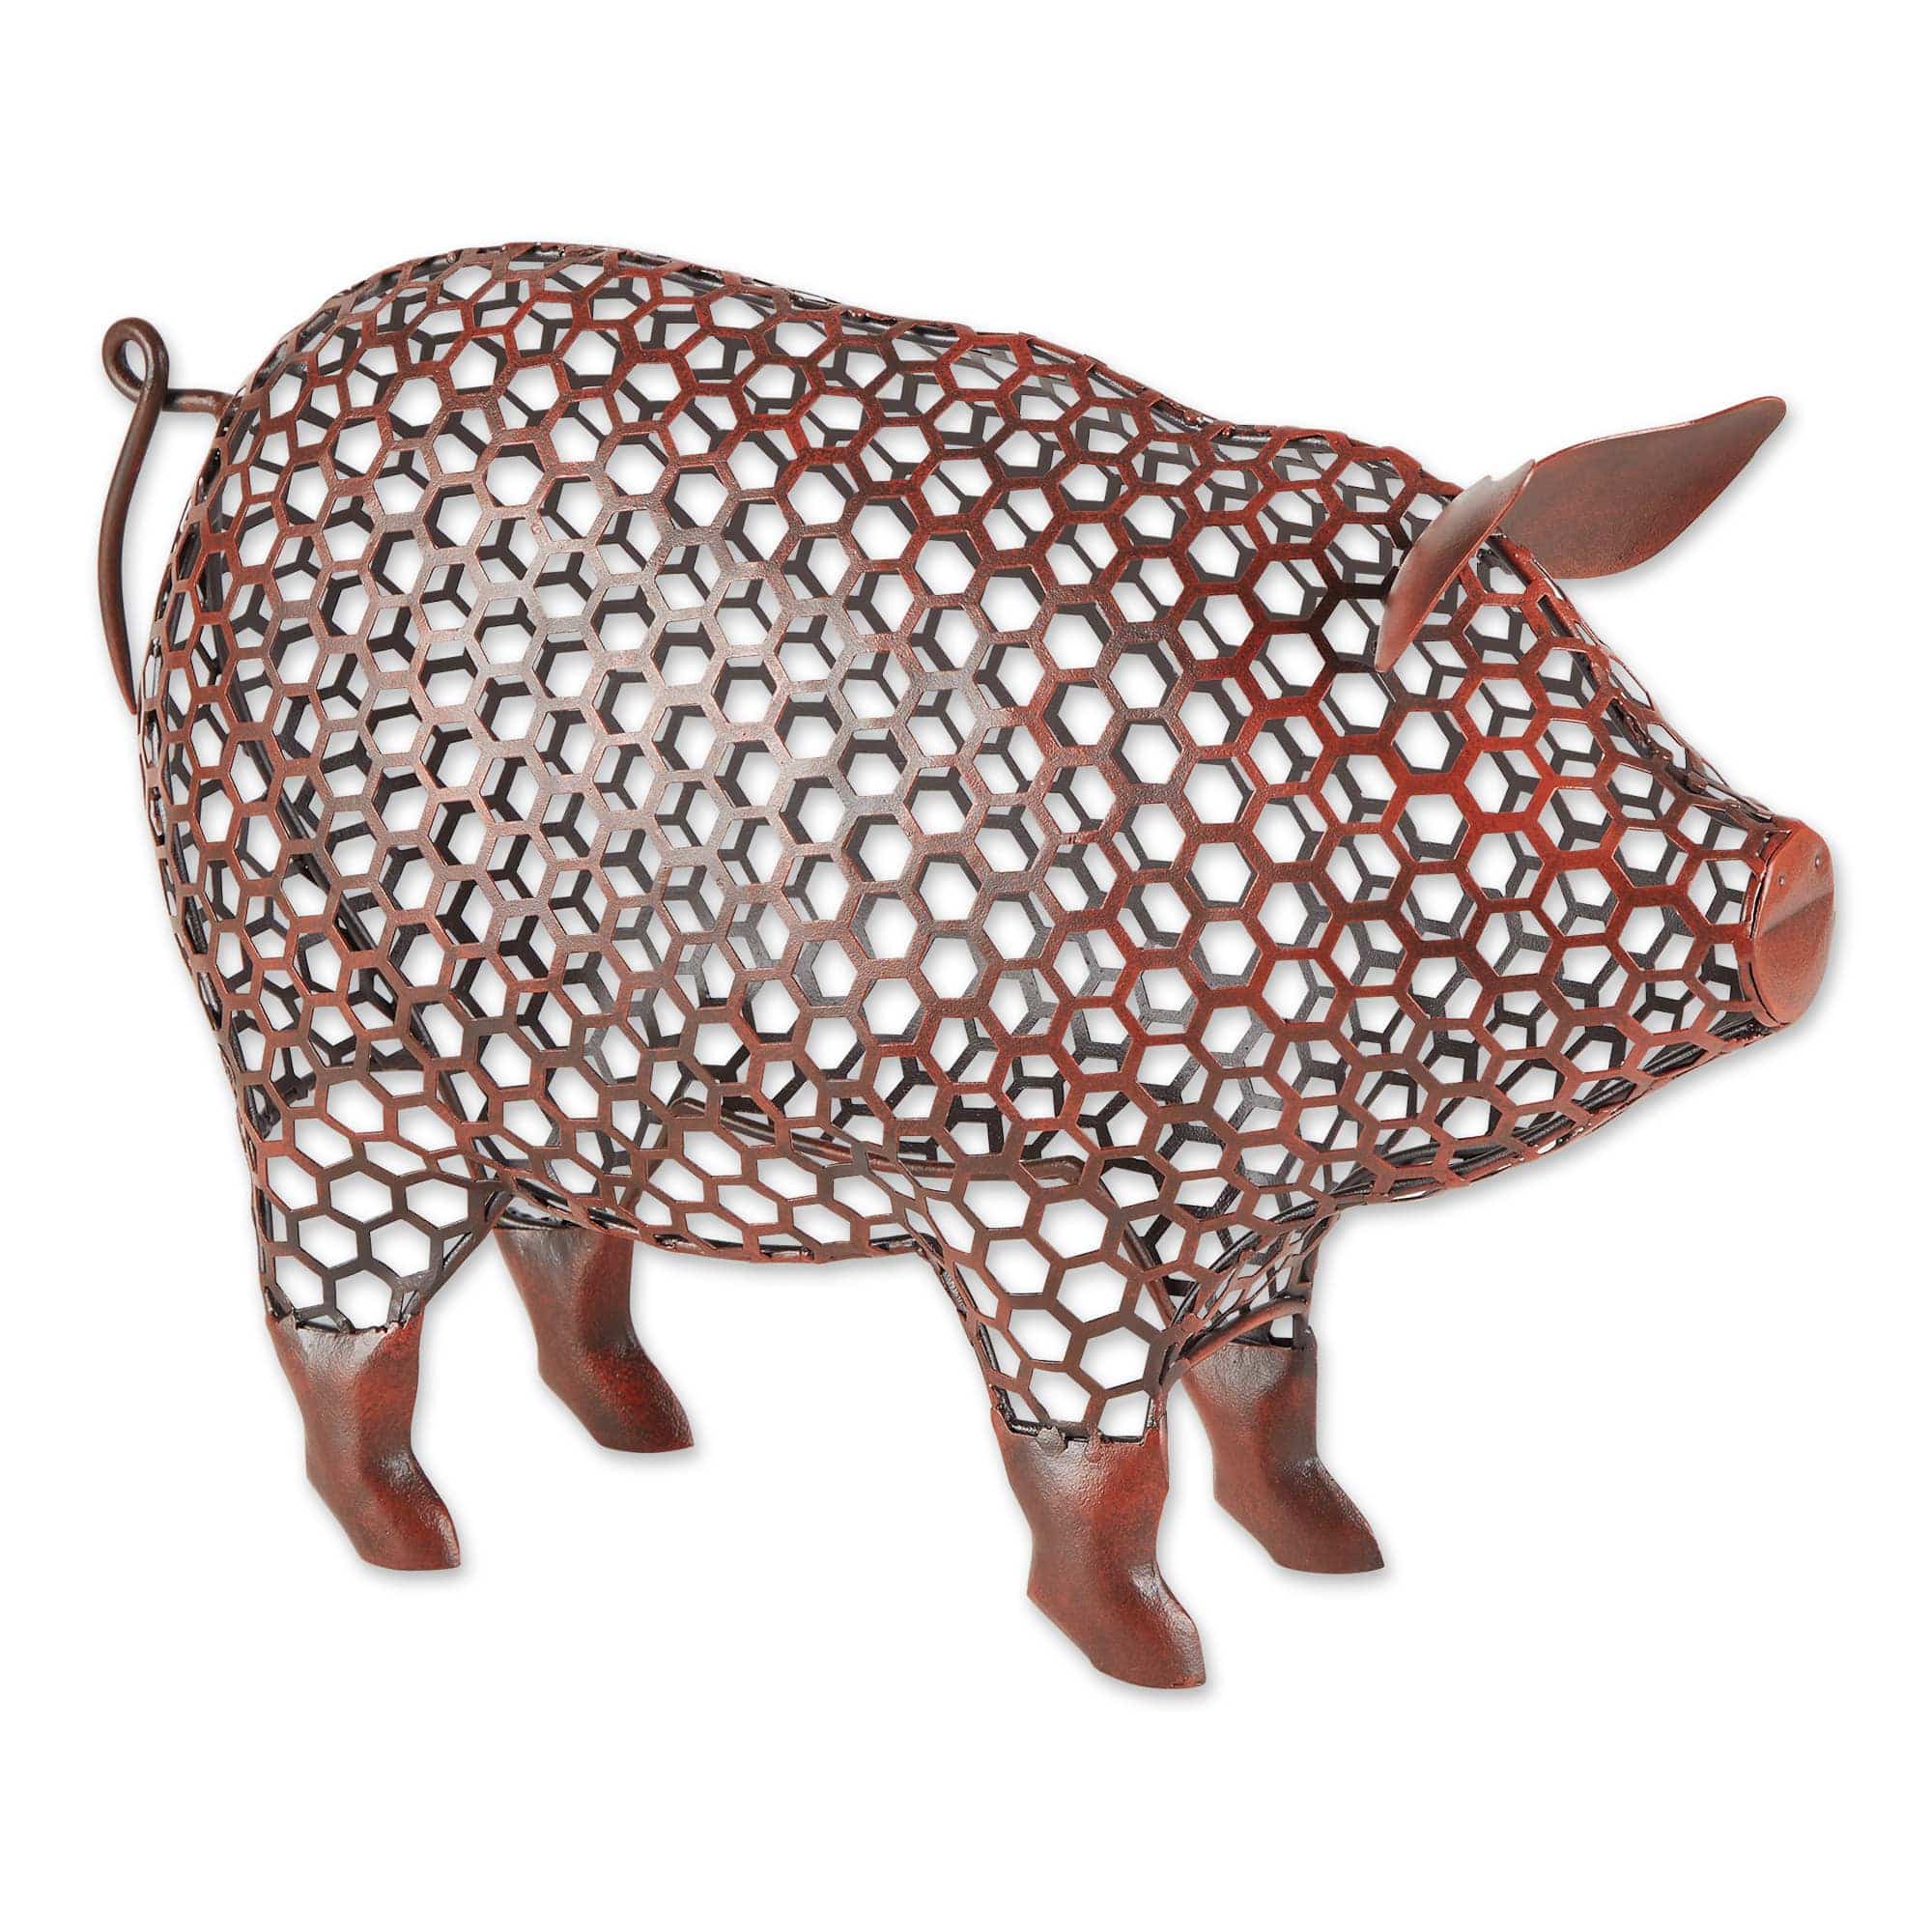 Pig Sculpture Chicken Wire Look*